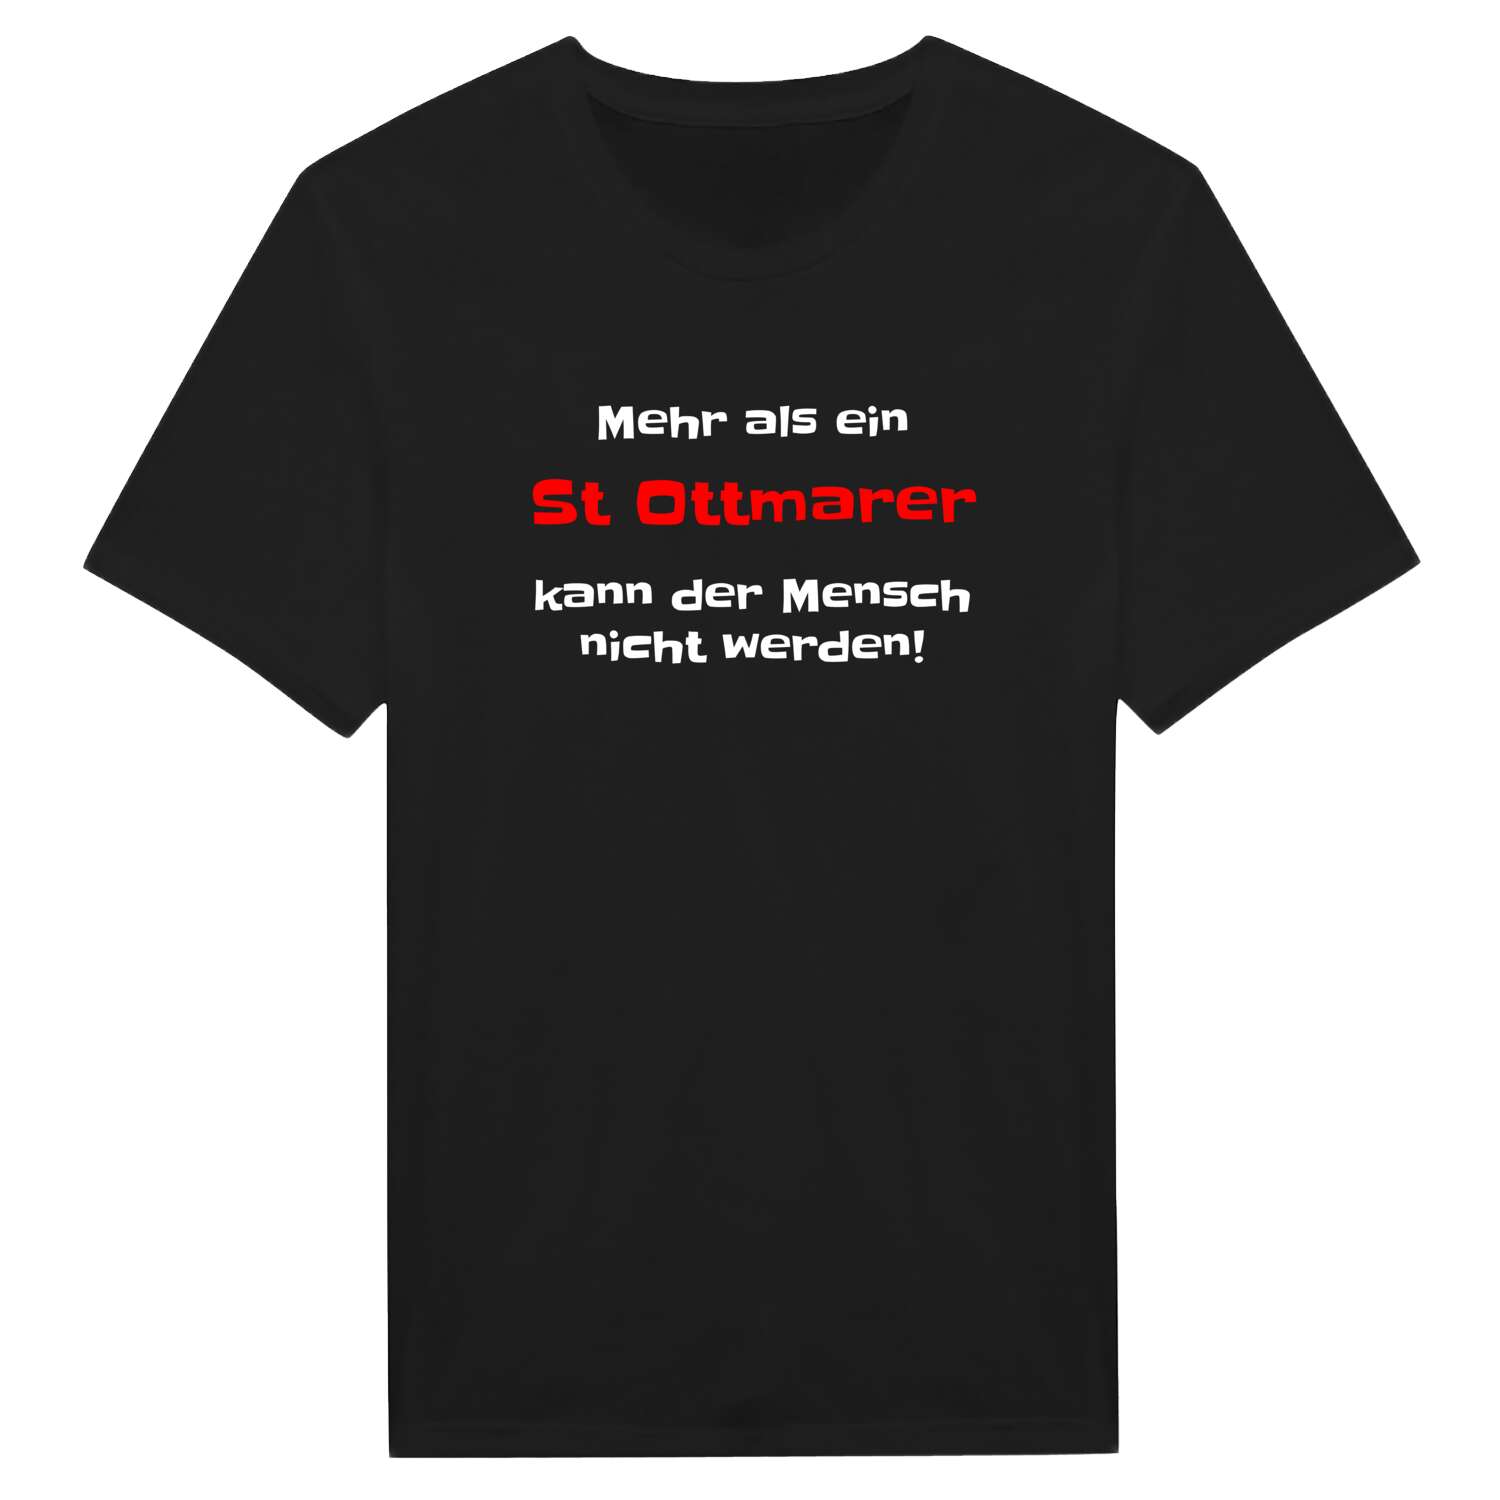 St Ottmar T-Shirt »Mehr als ein«